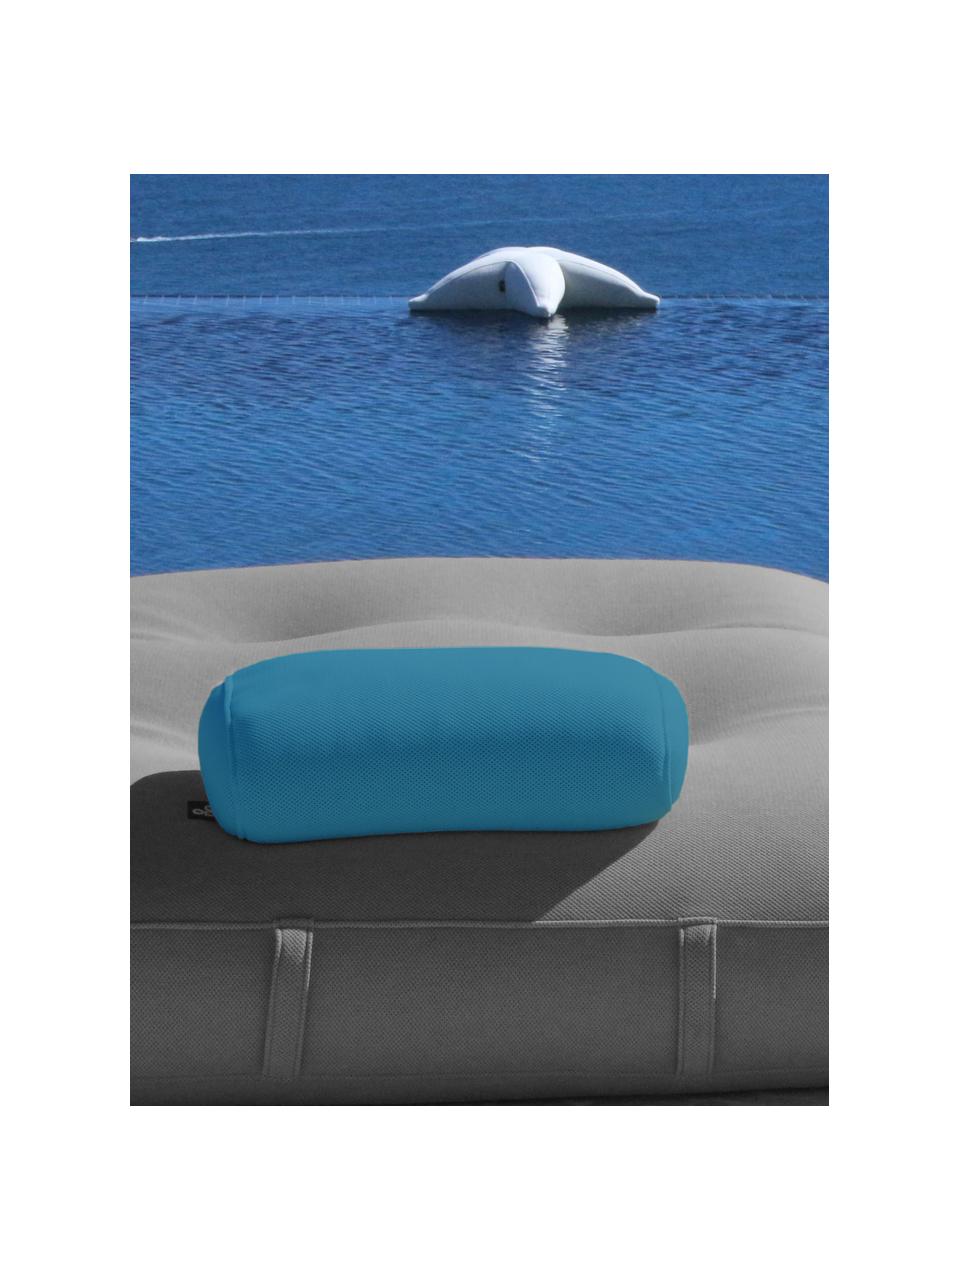 Ręcznie wykonana poduszka zewnętrzna Pillow, Tapicerka: 70% PAN + 30% PES, wodood, Petrol, S 50 x L 30 cm